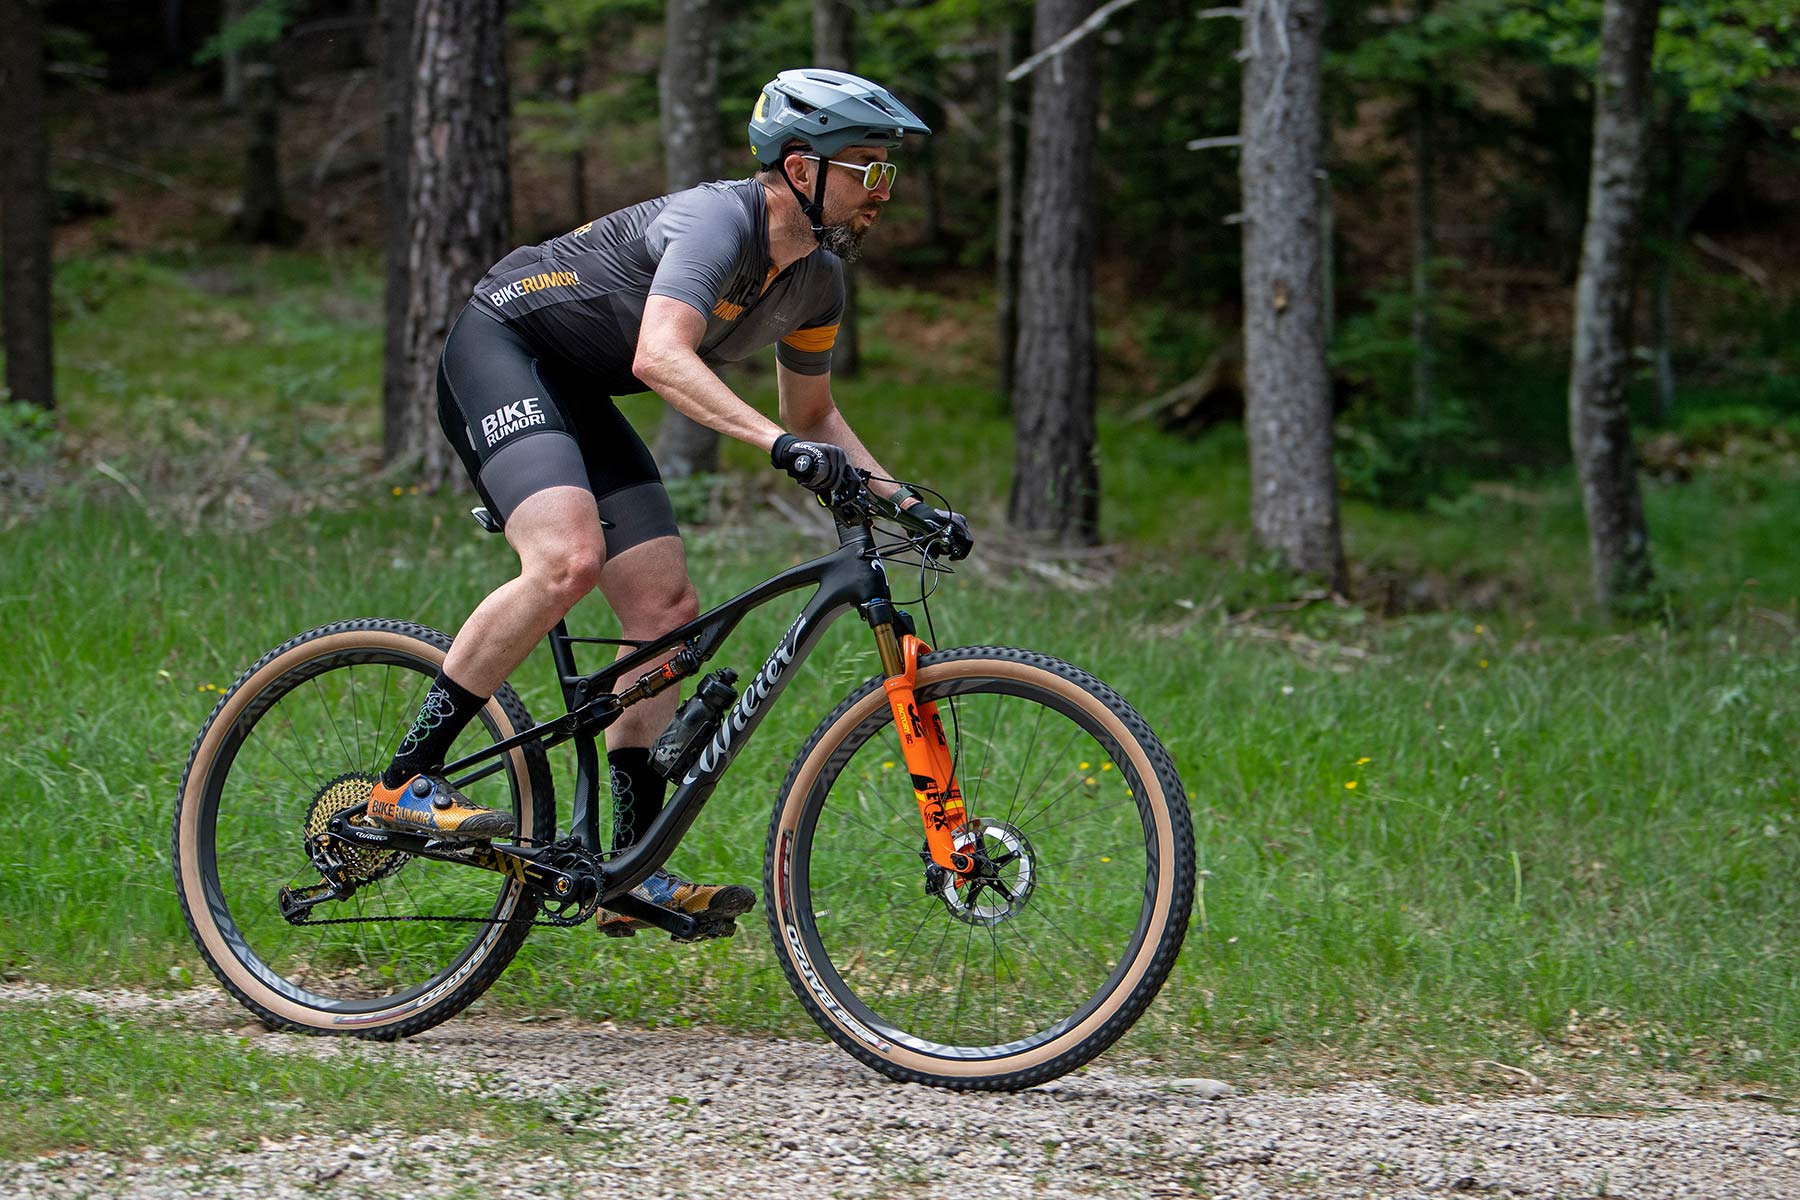 2022 Wilier Urta SLR carbon XC race mountain bike review, photo by Luigi Sestili-Mountain Bike Connection, riding